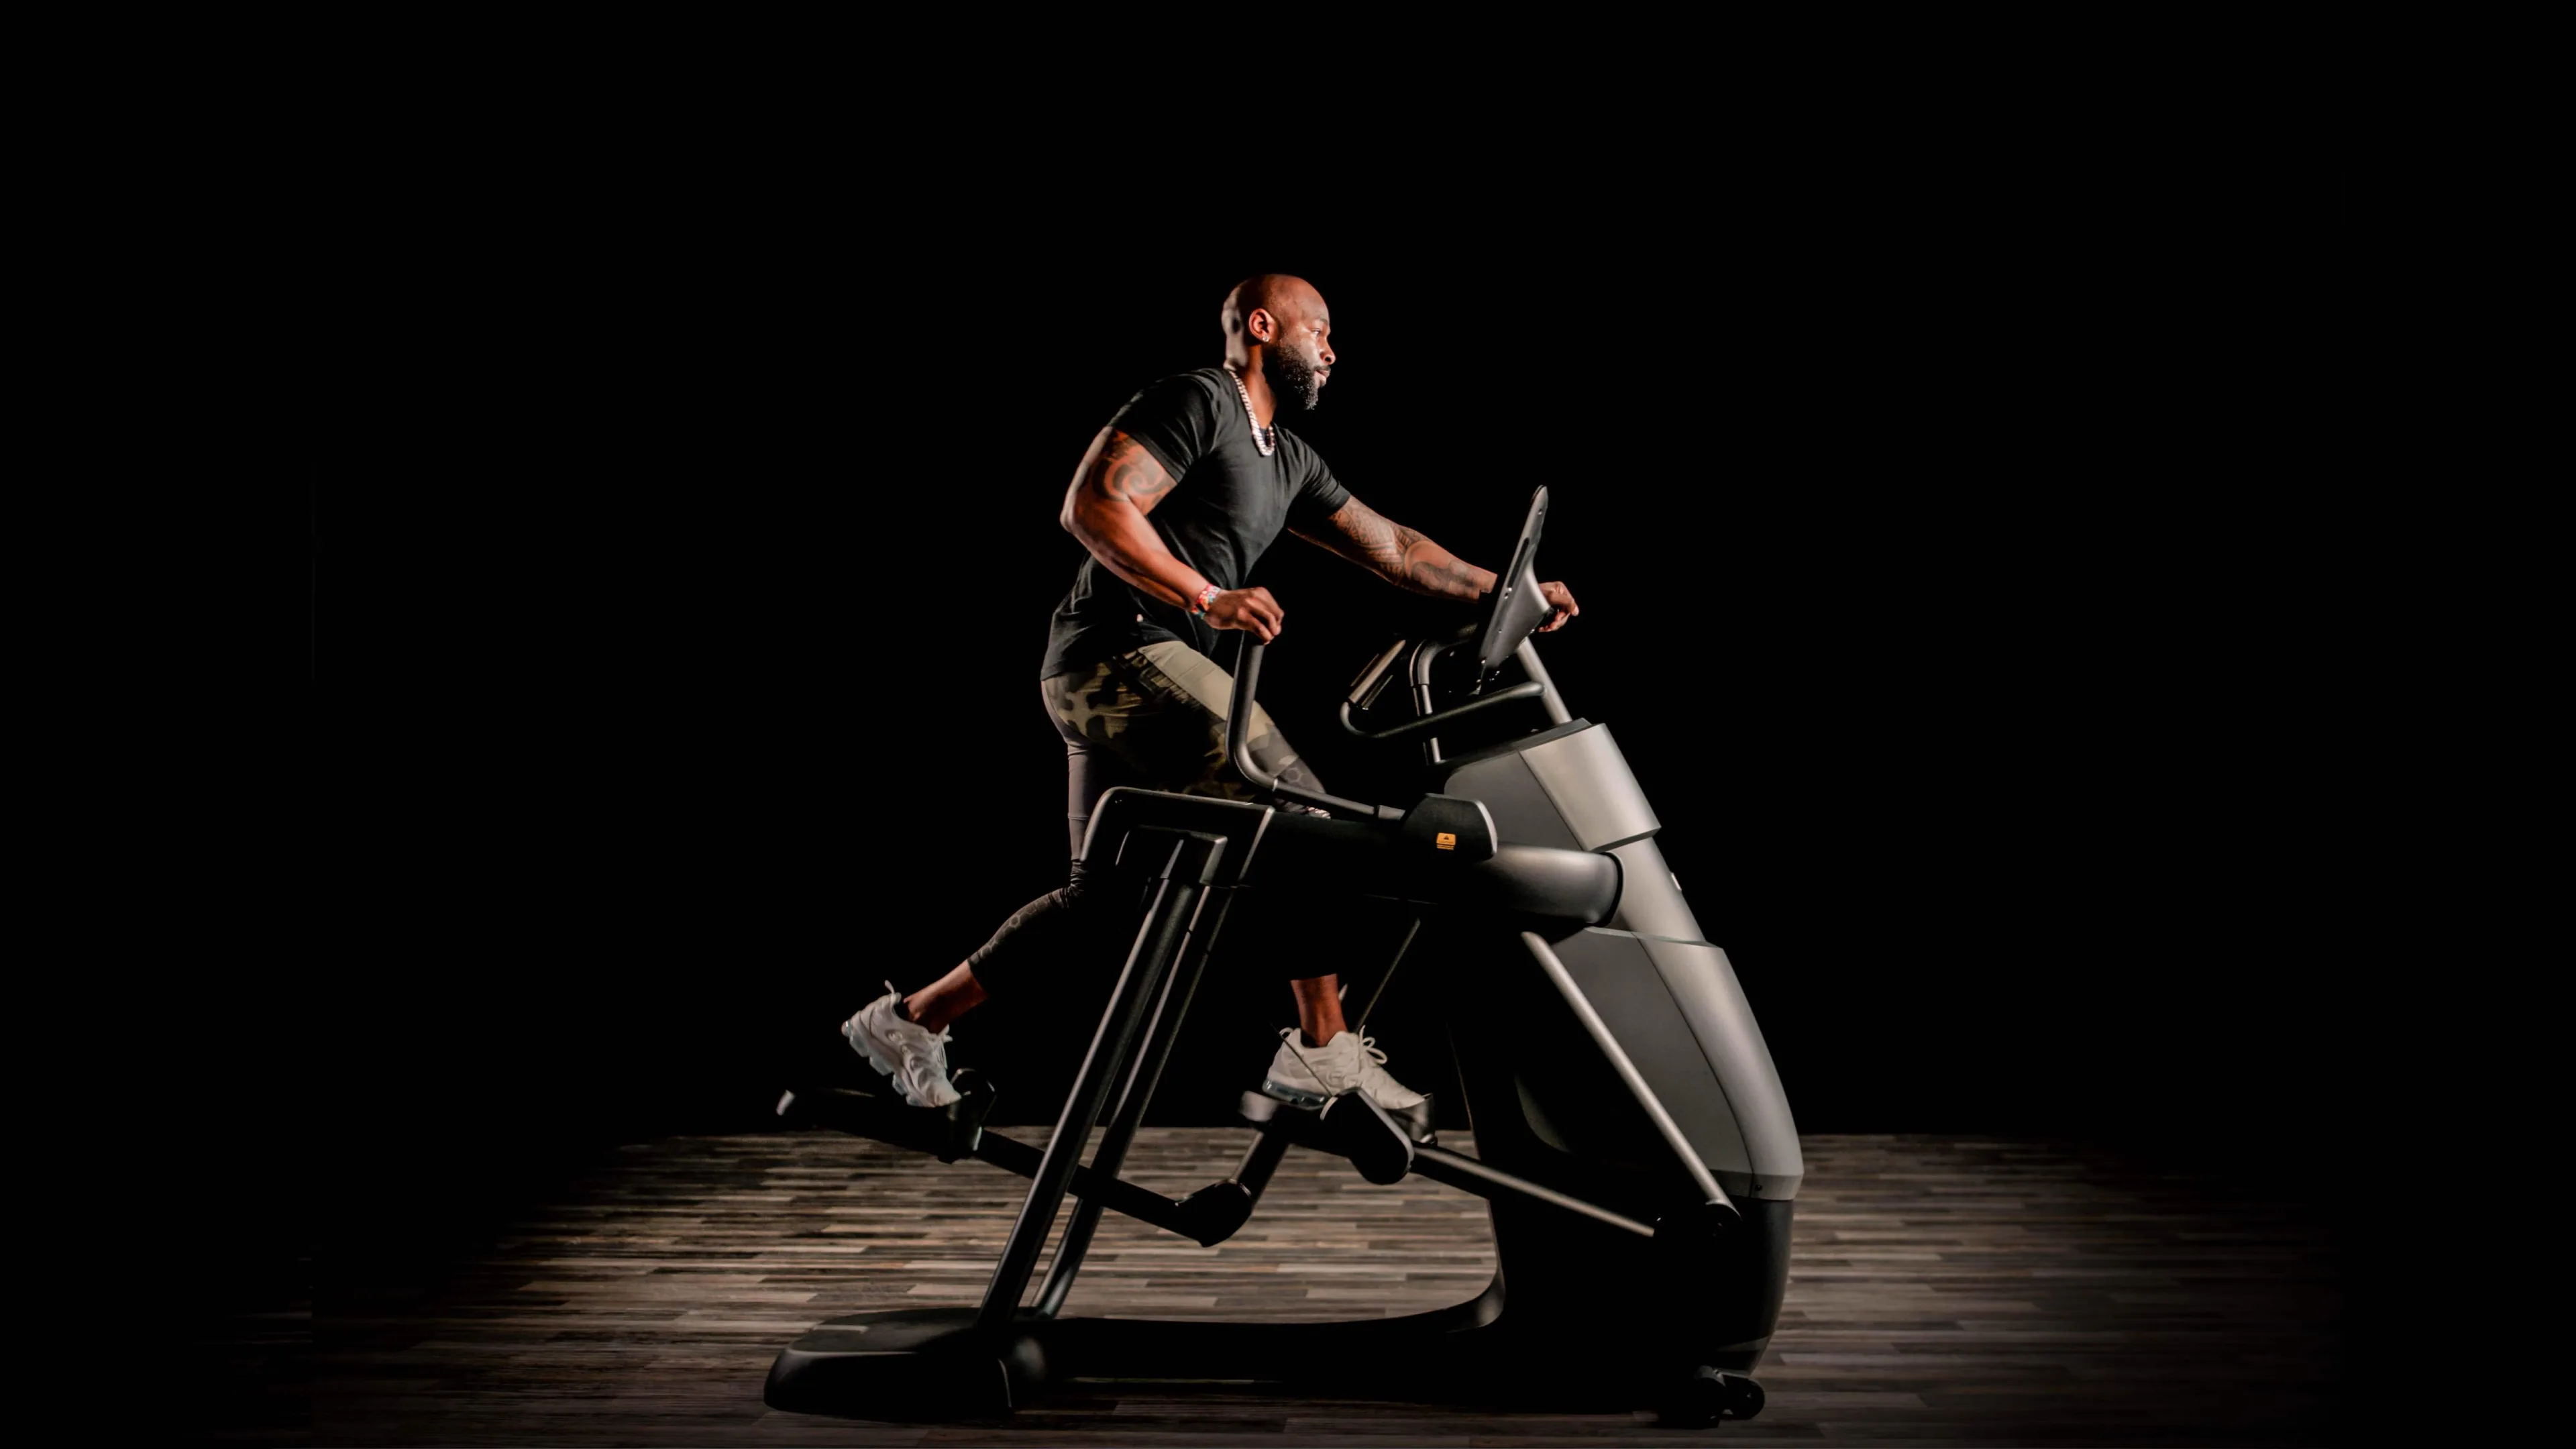 Precor Adaptive Motion Trainer®